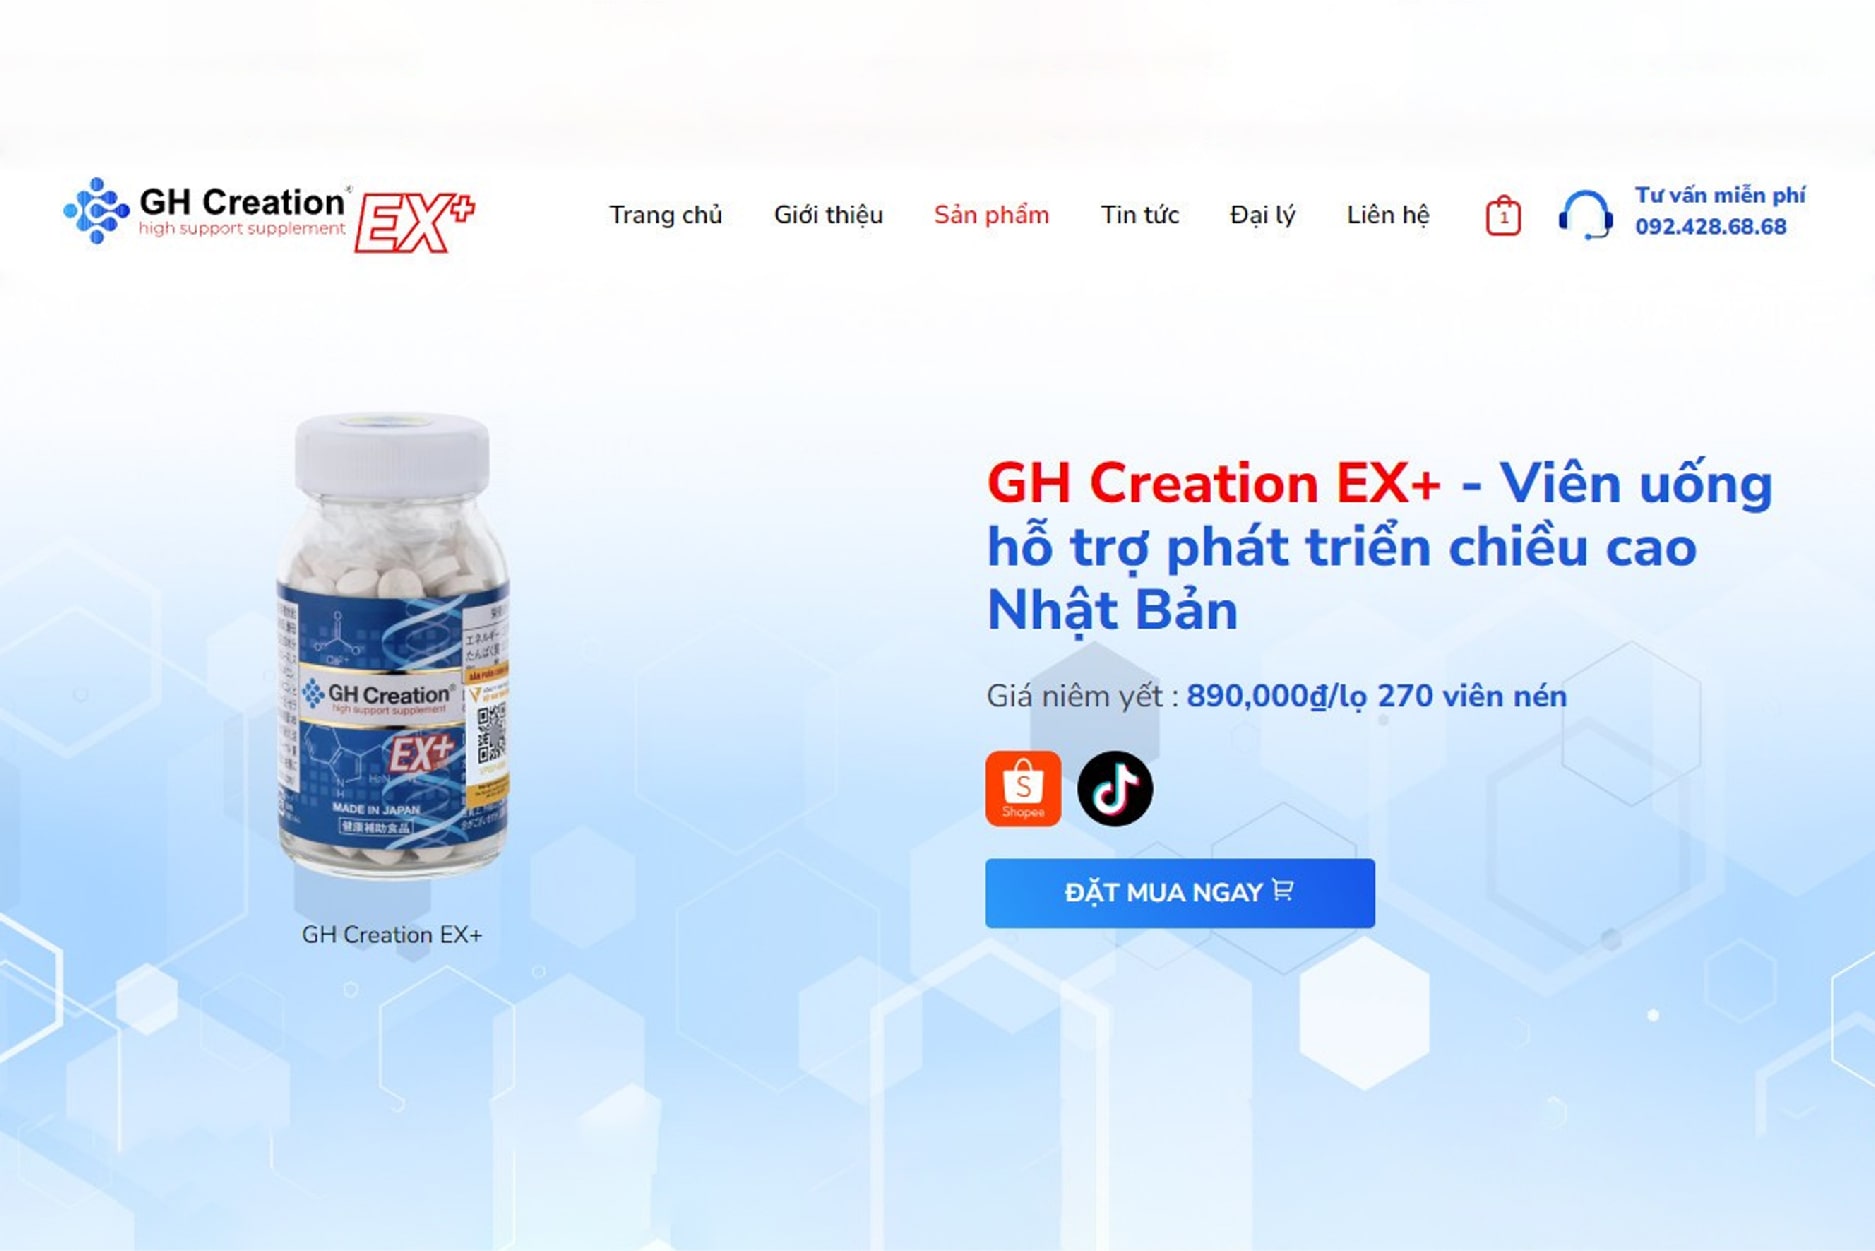 Website chính thức của GH Creation EX+ Việt Nam